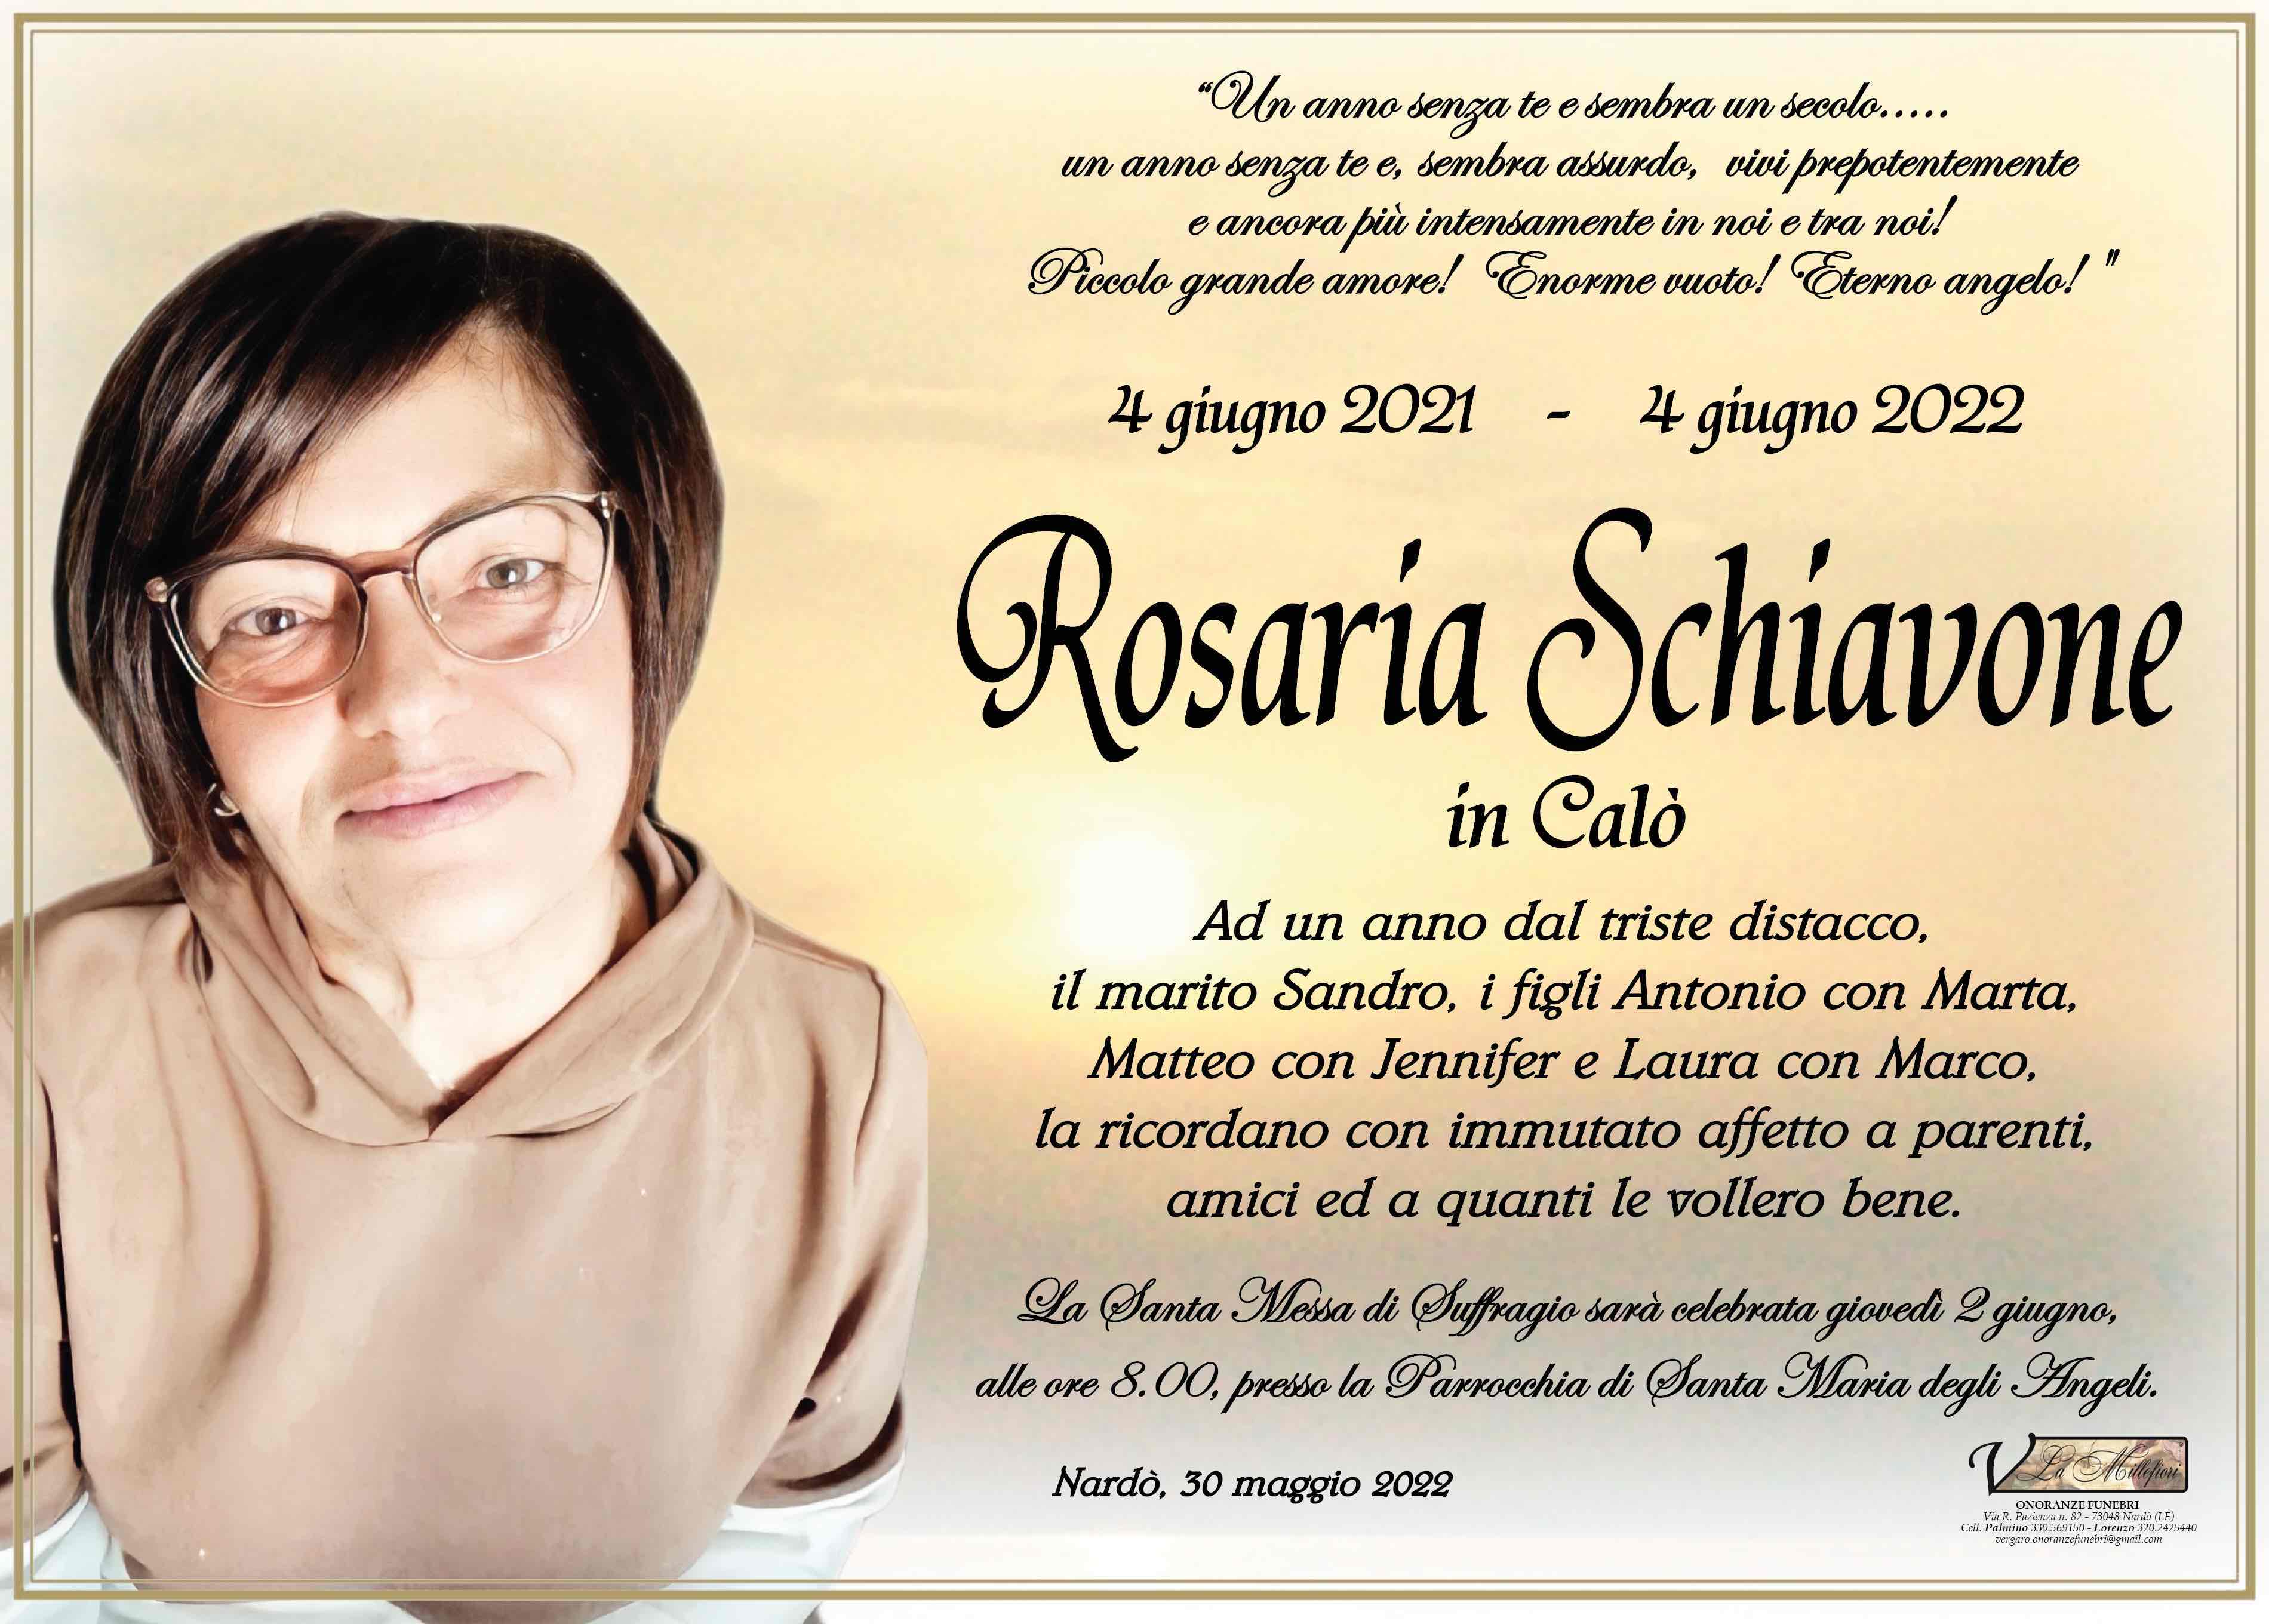 Maria Rosaria Schiavone